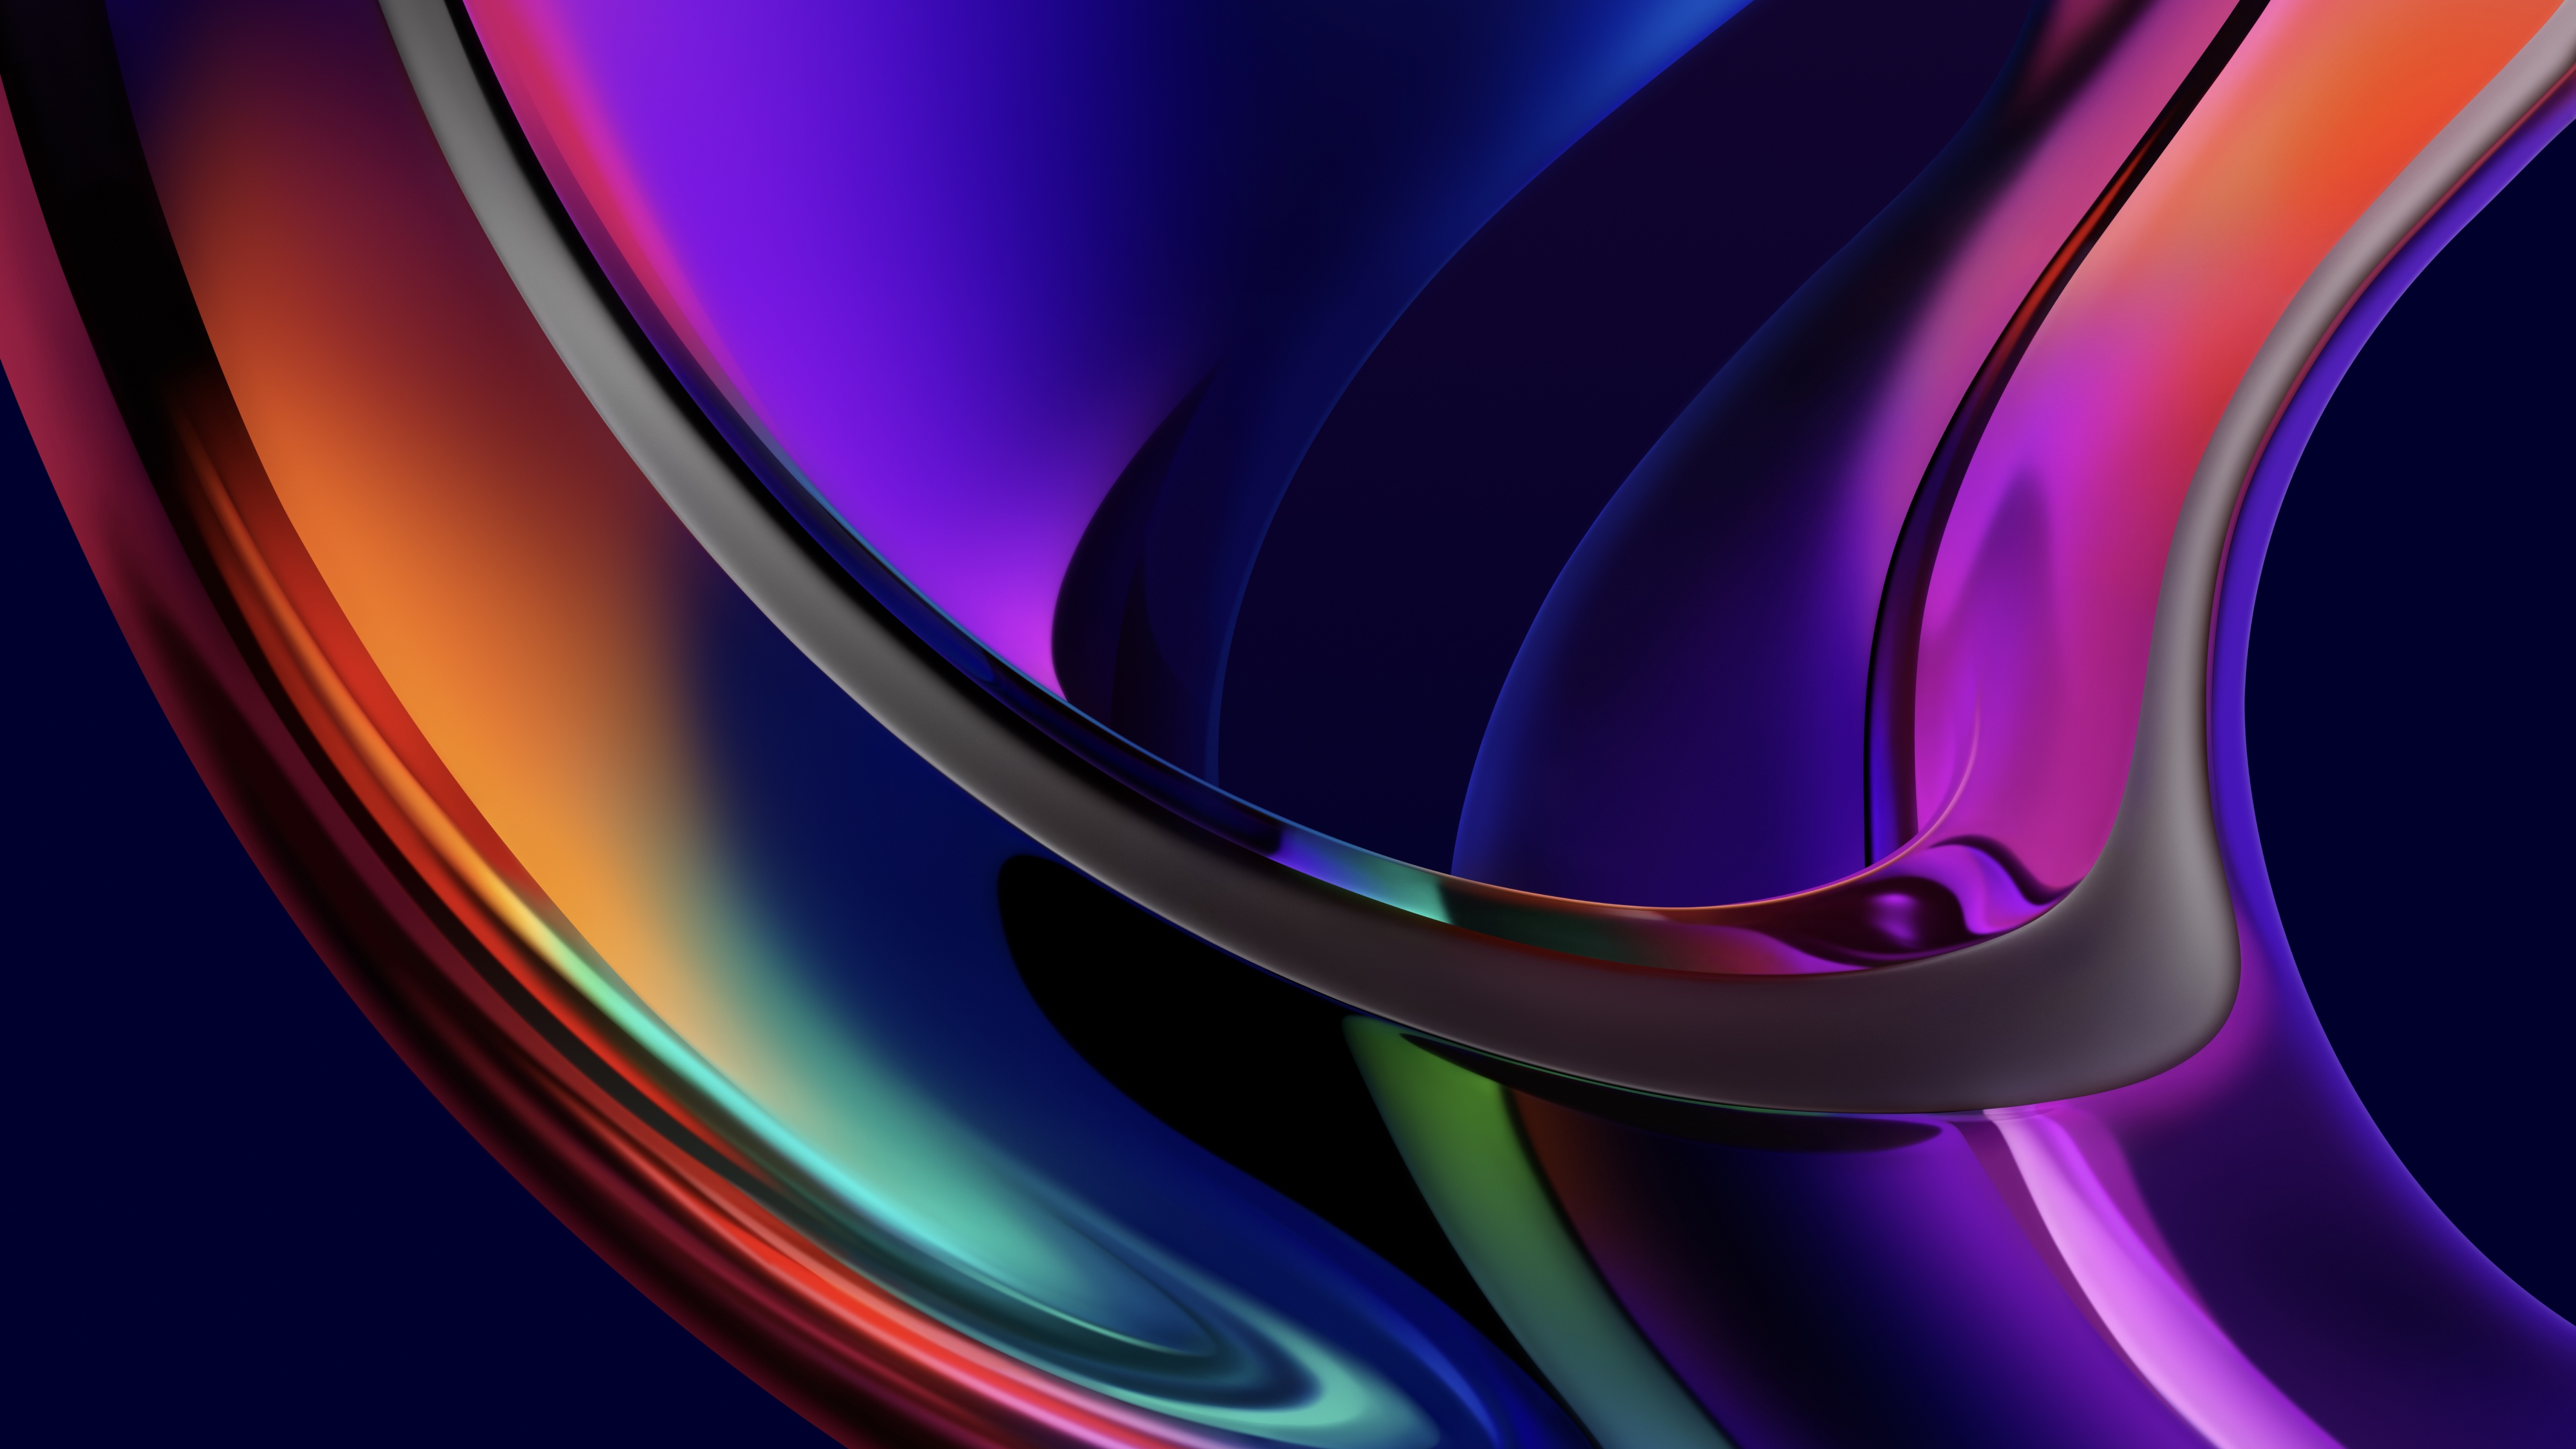 Iridescence Wallpaper 4K, macOS Big Sur, MacBook Pro, Multicolor, Dark, Abstract